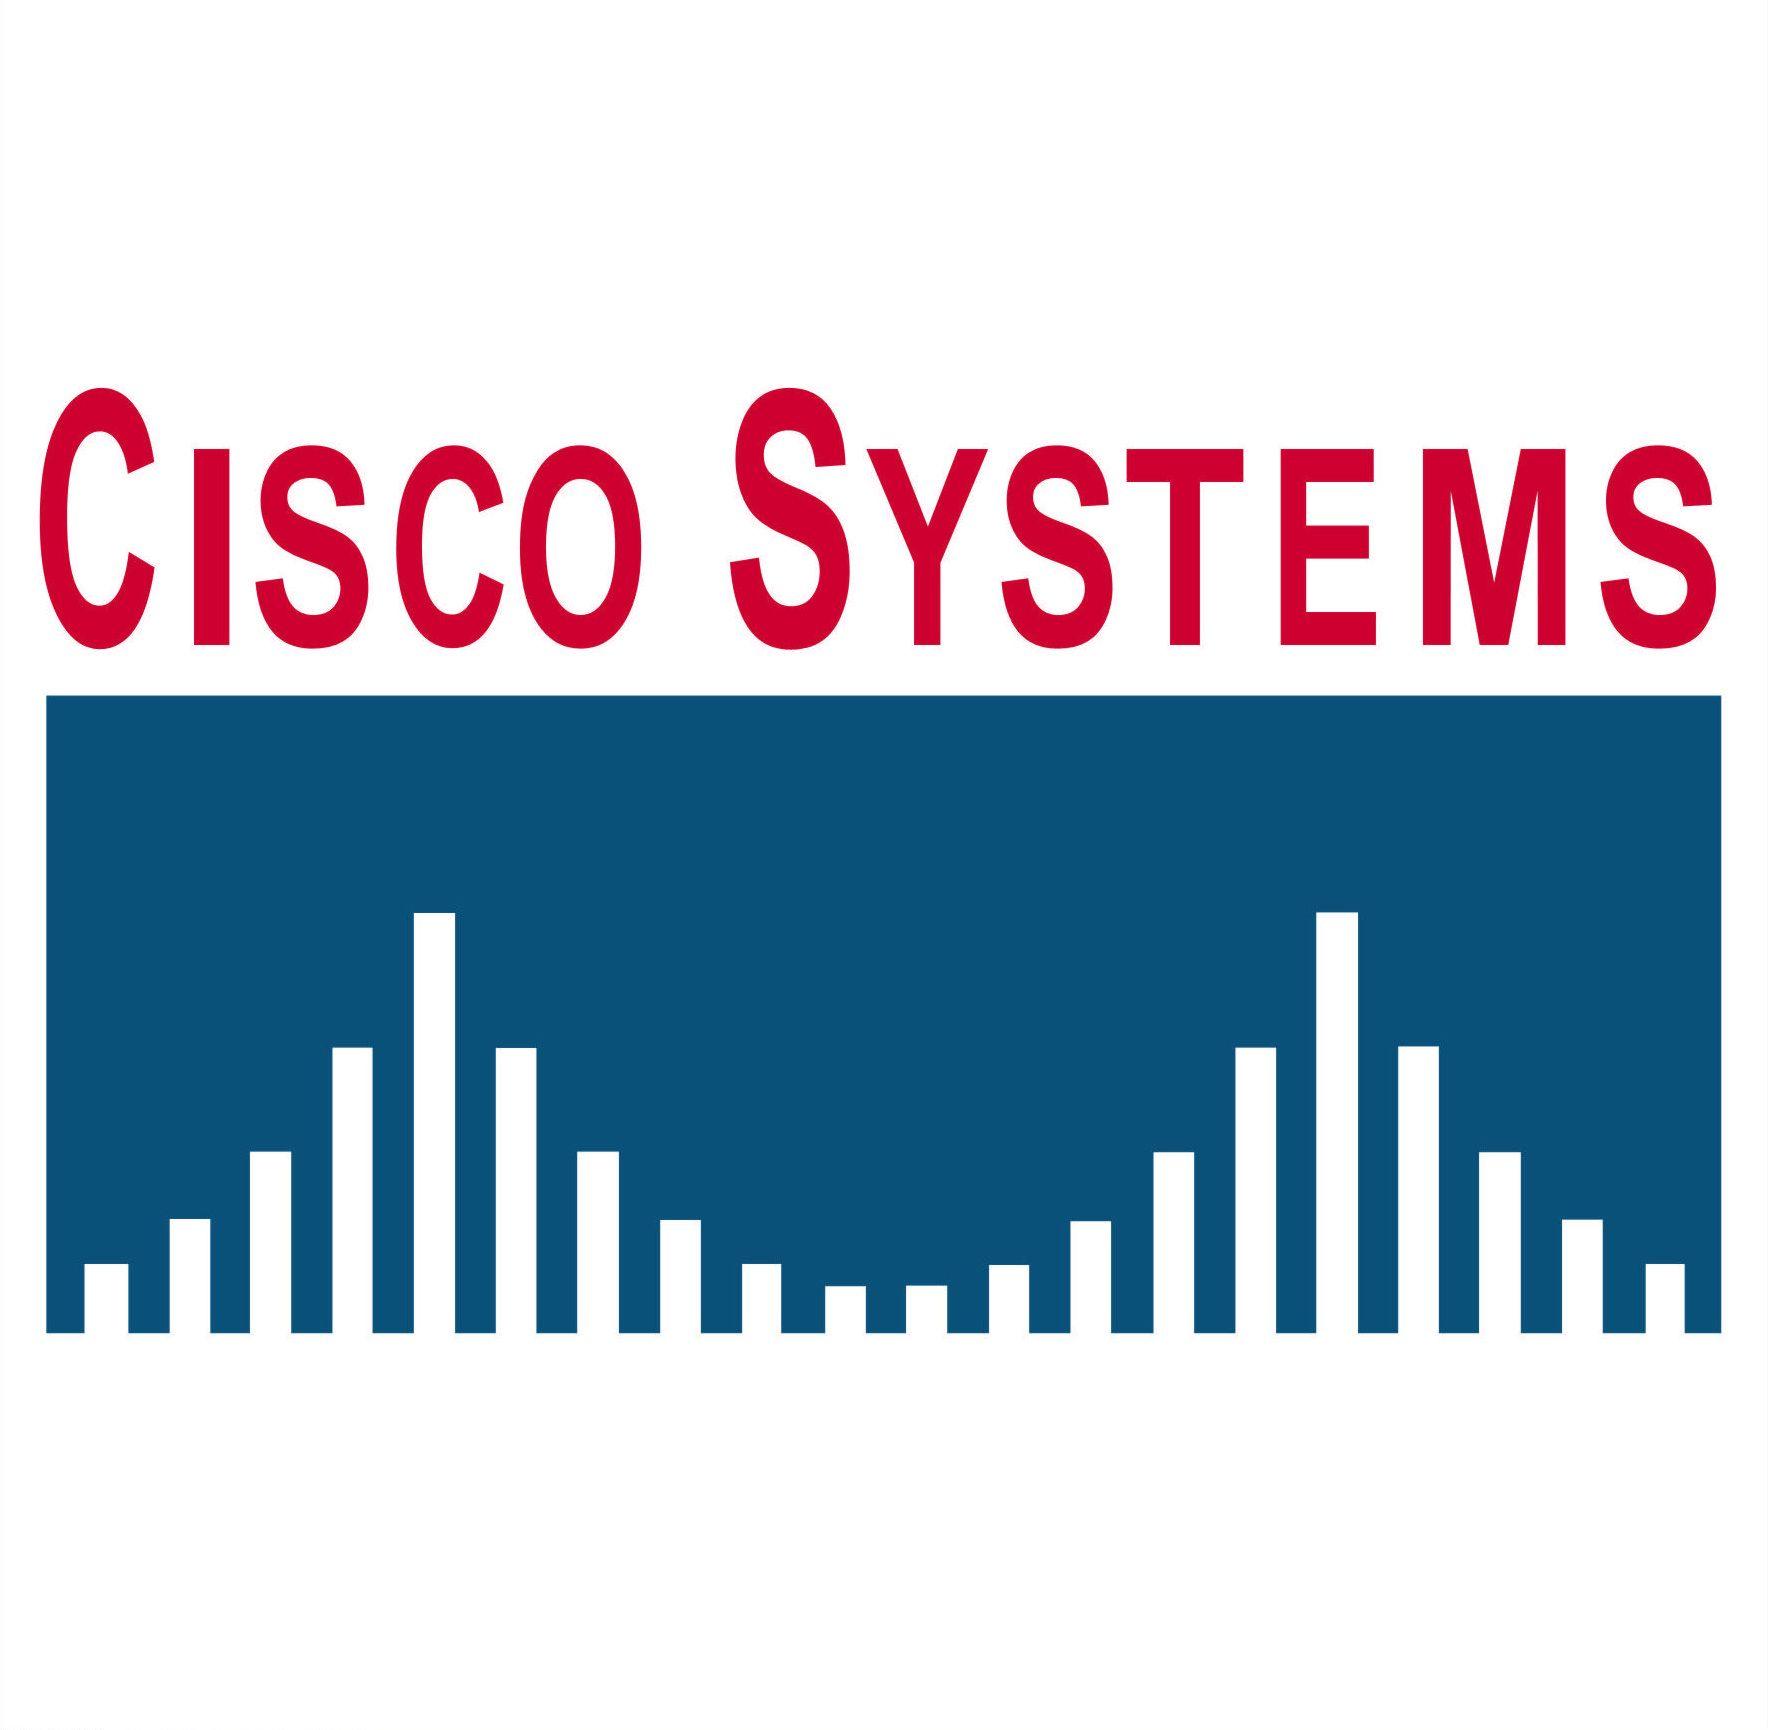 Cisco Systems Logo - Cisco Systems. The New Media Consortium